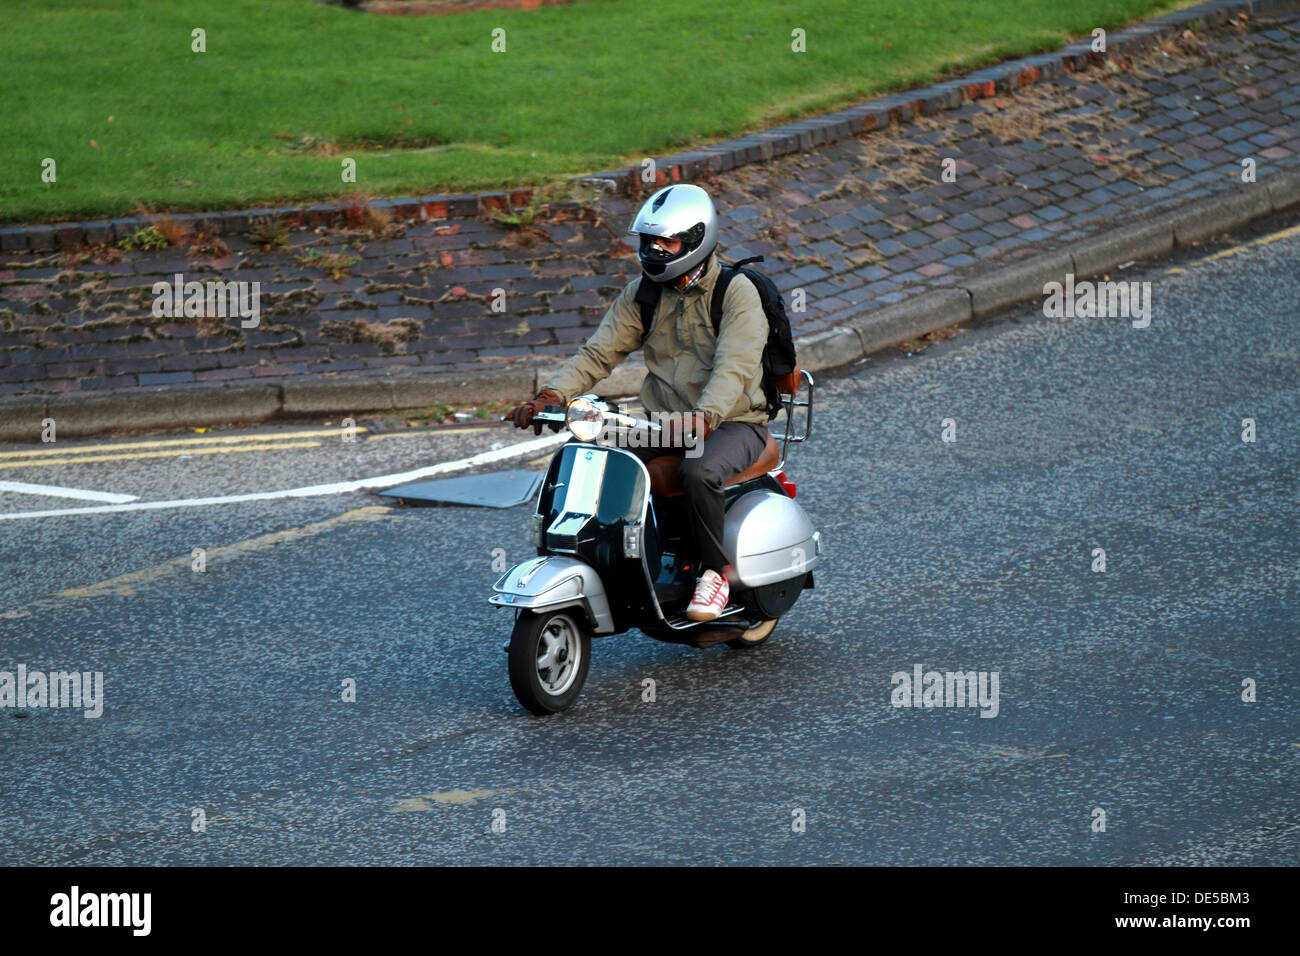 Un homme sur un cyclomoteur moto scooter voyages au travail portant un  casque et des vêtements simples Photo Stock - Alamy